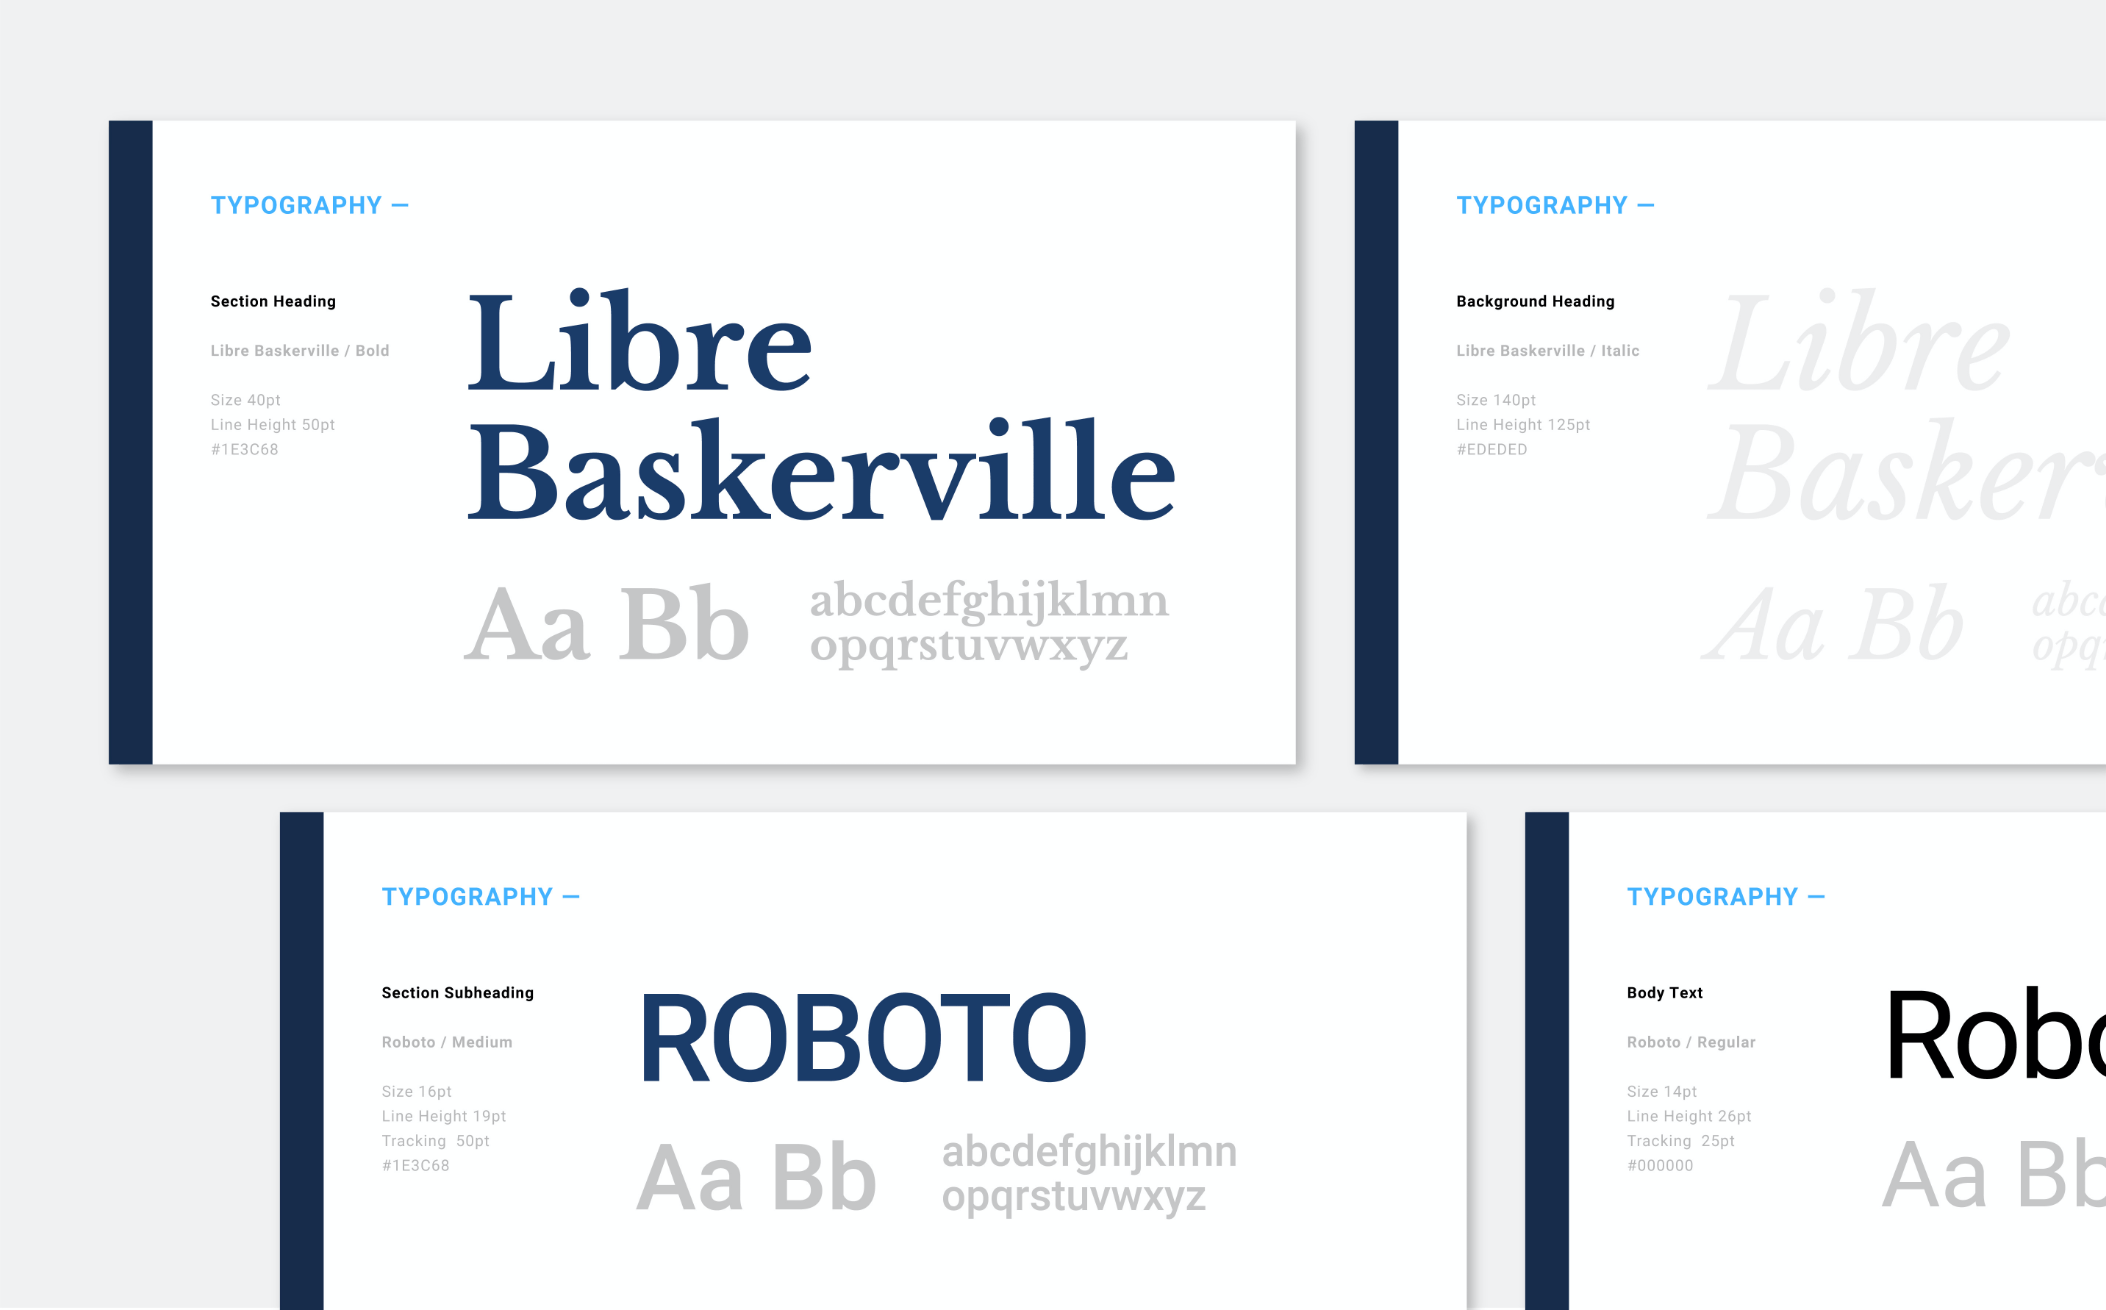 Font samples